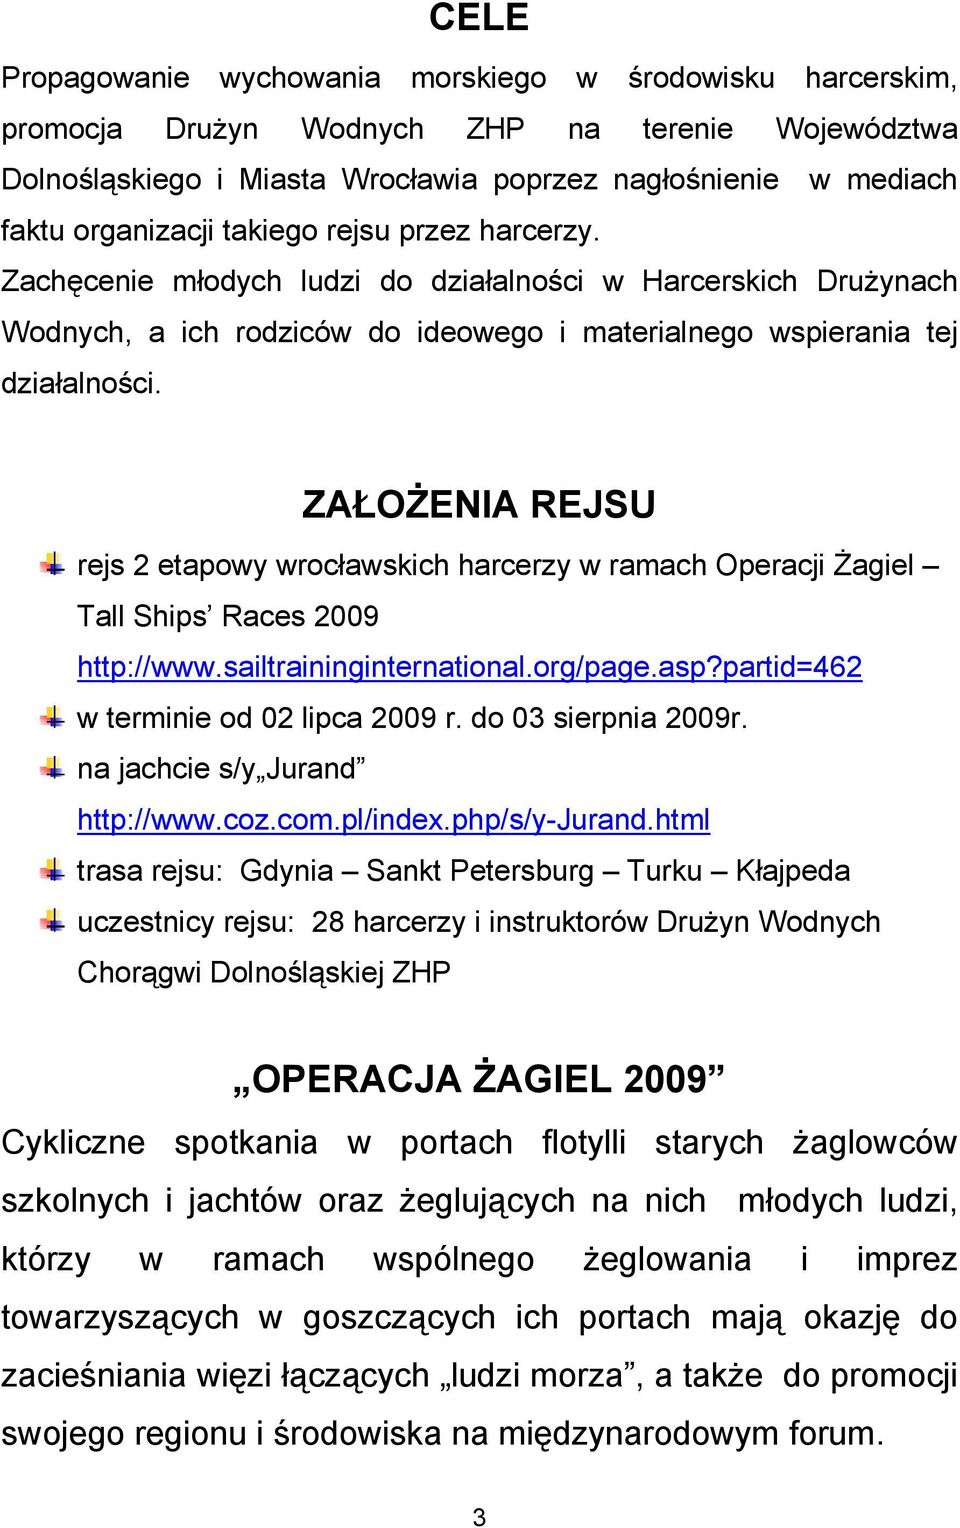 ZAŁOŻENIA REJSU rejs 2 etapowy wrocławskich harcerzy w ramach Operacji Żagiel Tall Ships Races 2009 http://www.sailtraininginternational.org/page.asp?partid=462 w terminie od 02 lipca 2009 r.